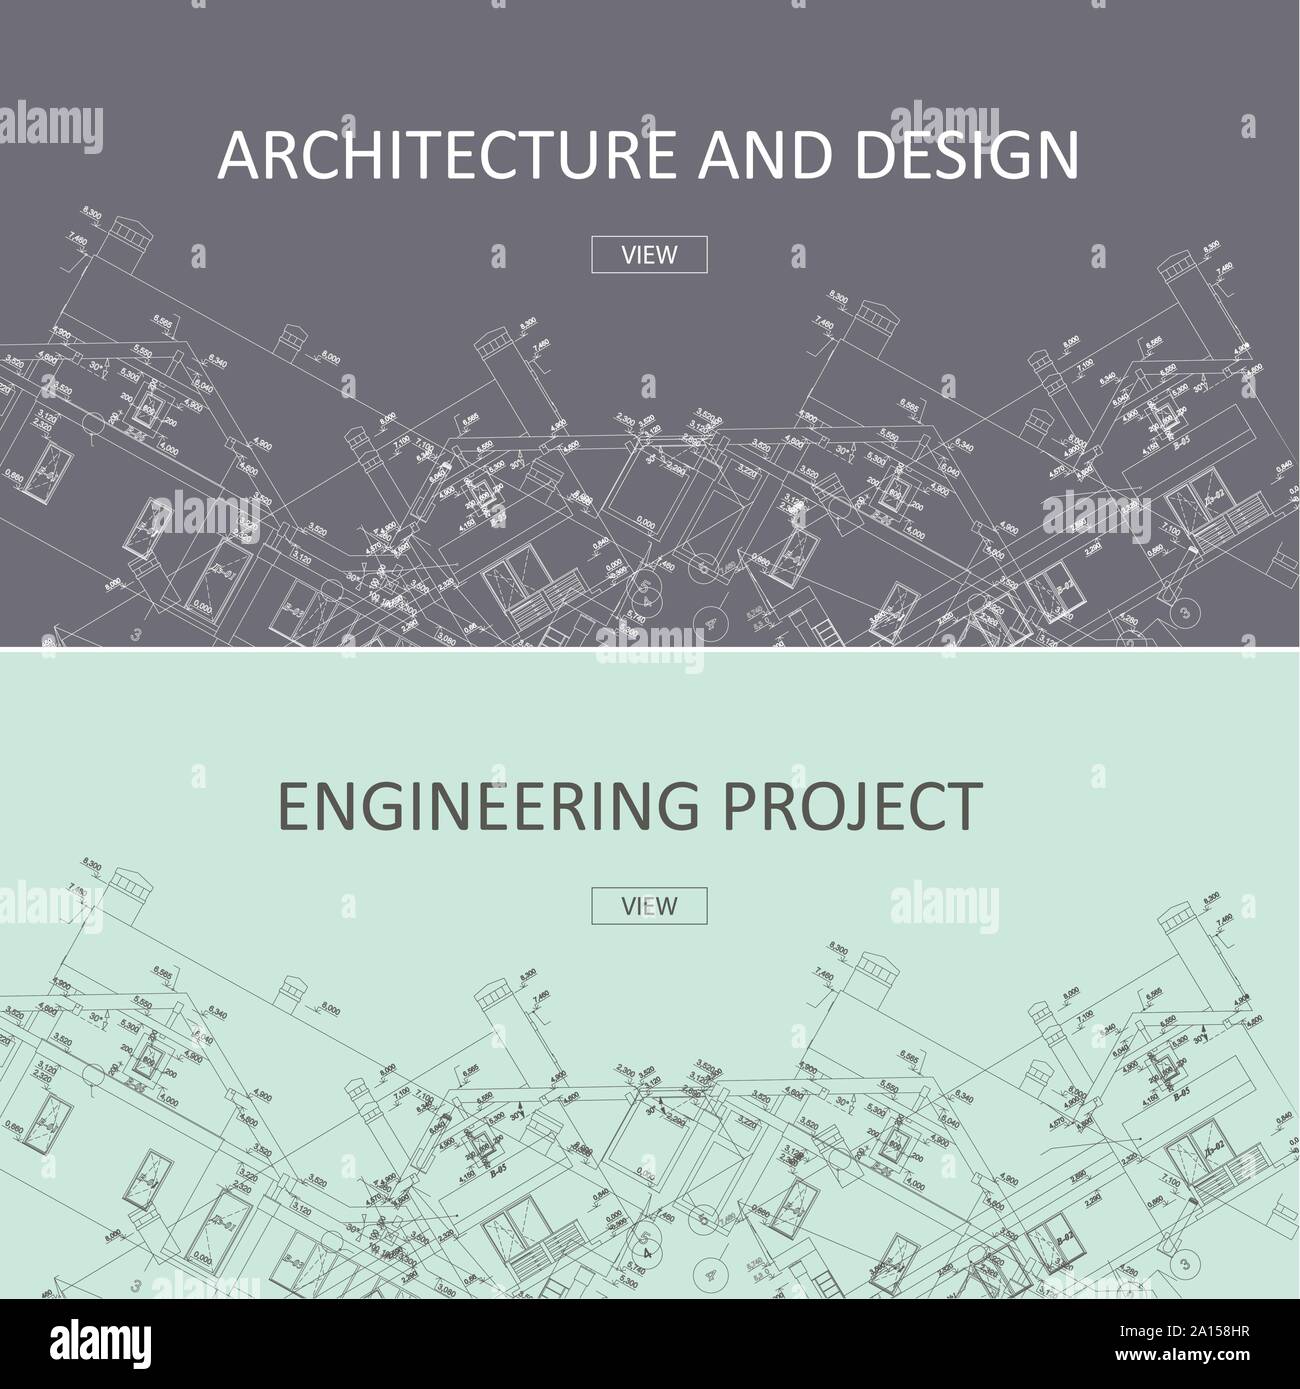 Progetto di ingegneria e architettura design banner web.Il disegno tecnico, la costruzione di edifici di architettura industriale. Illustrazione Vettoriale